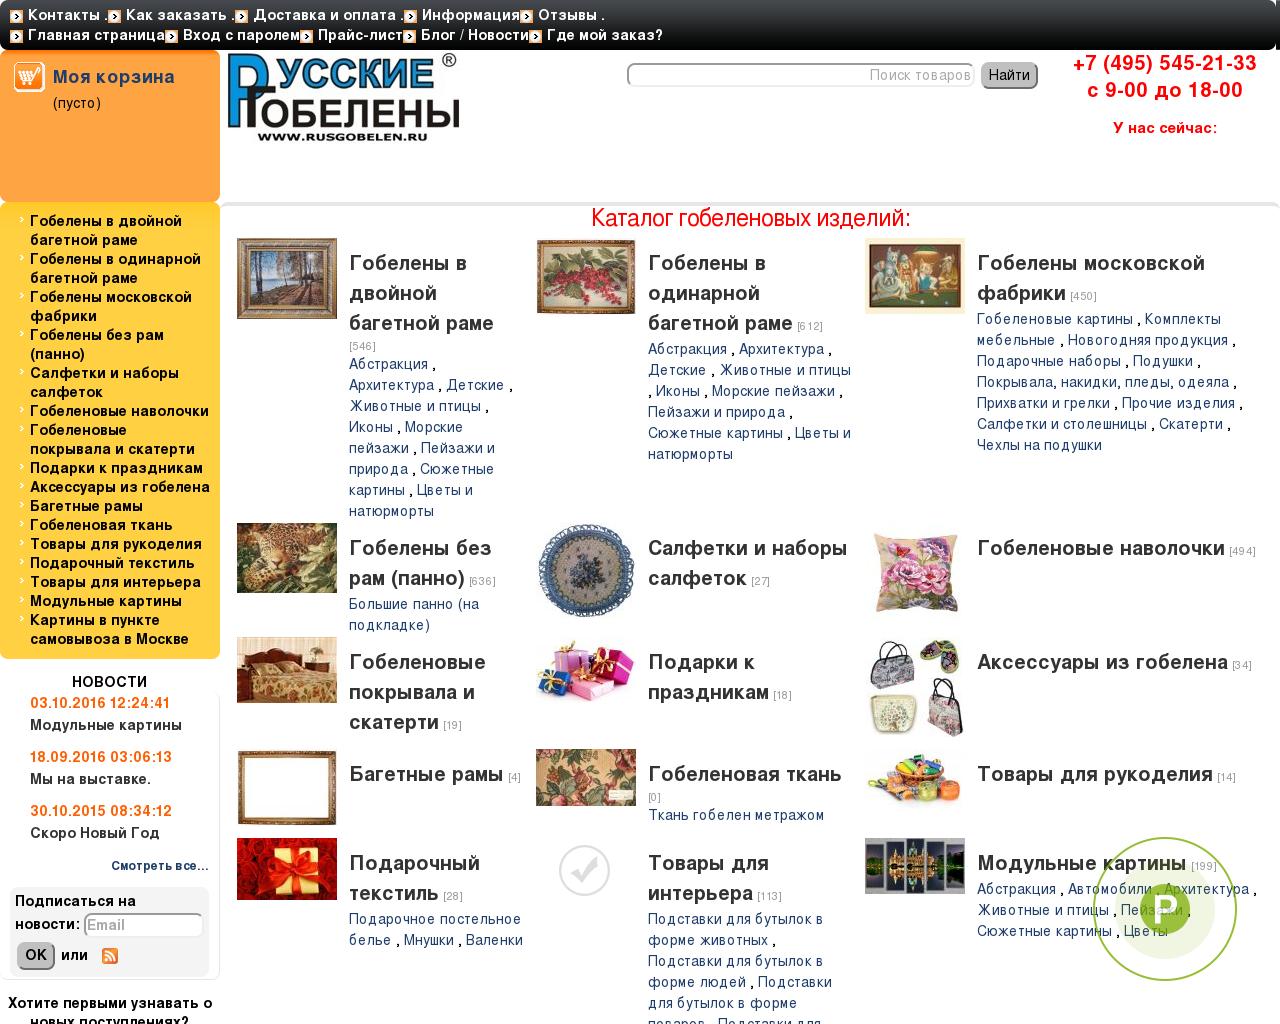 Изображение сайта rusgobelen.ru в разрешении 1280x1024